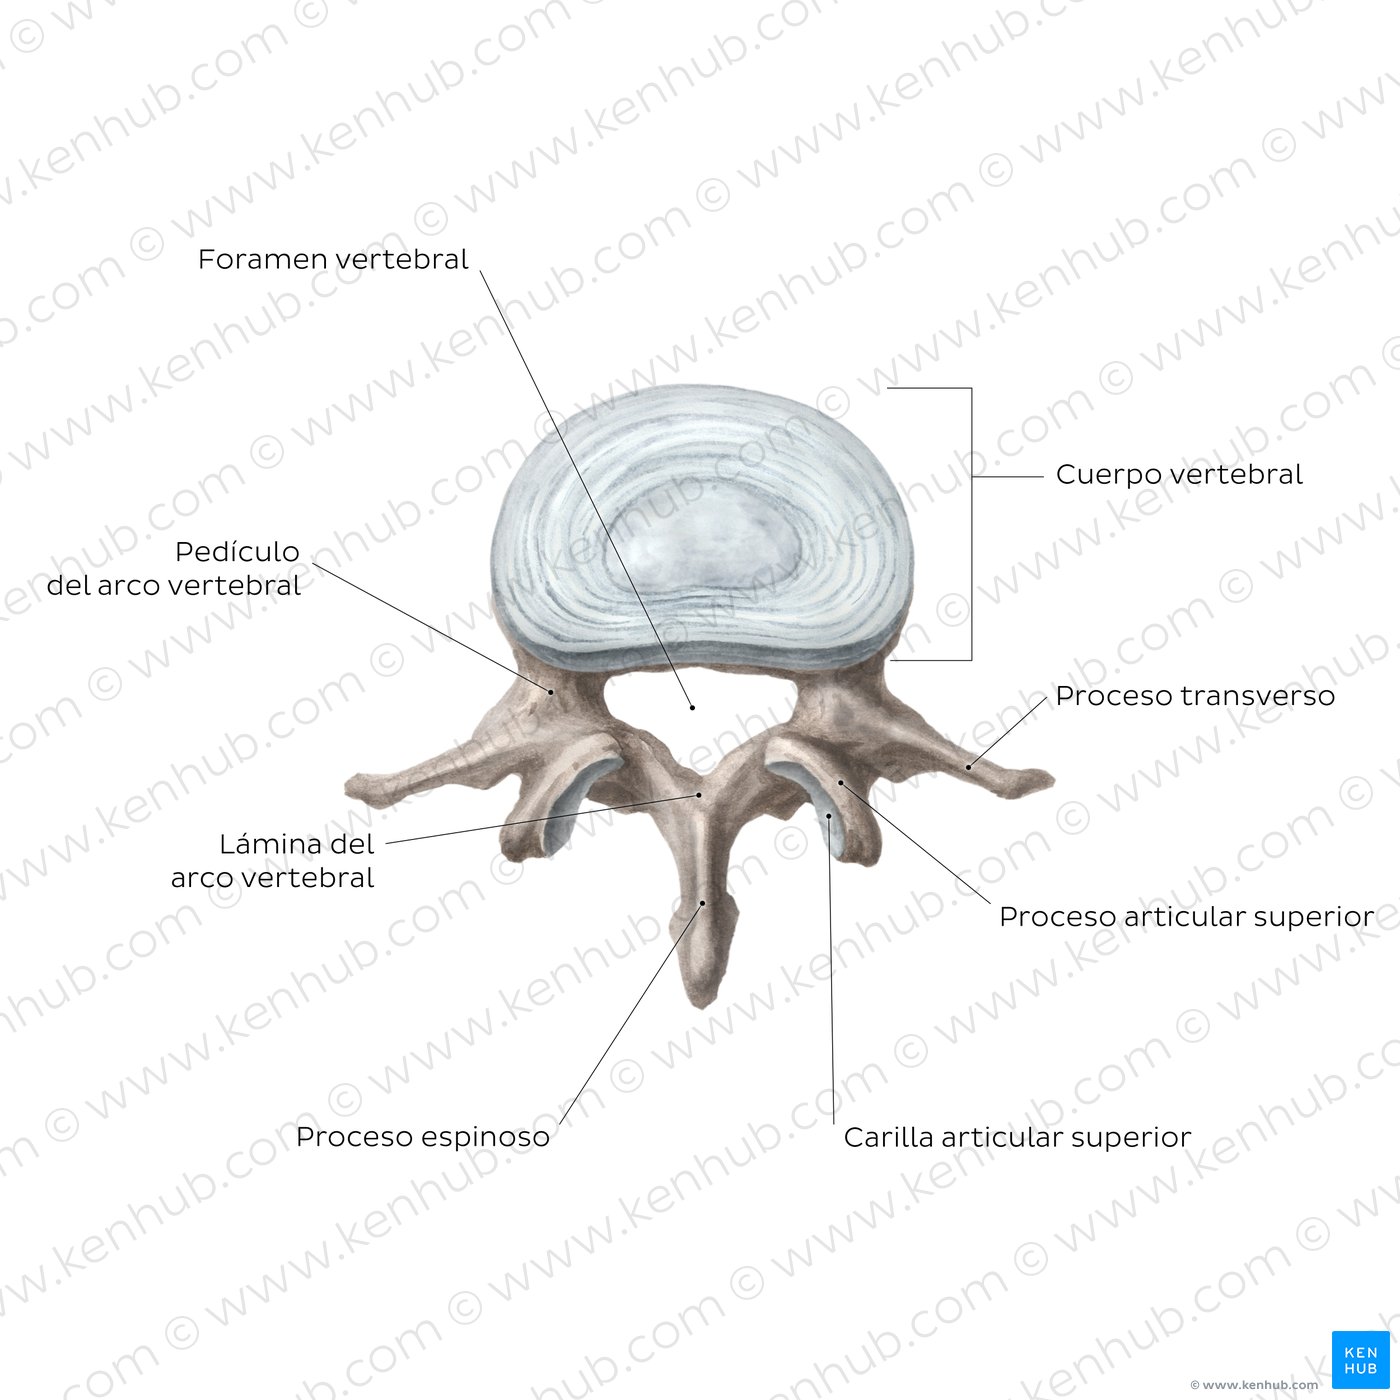 Anatomomía de una vértebra típica (diagram)